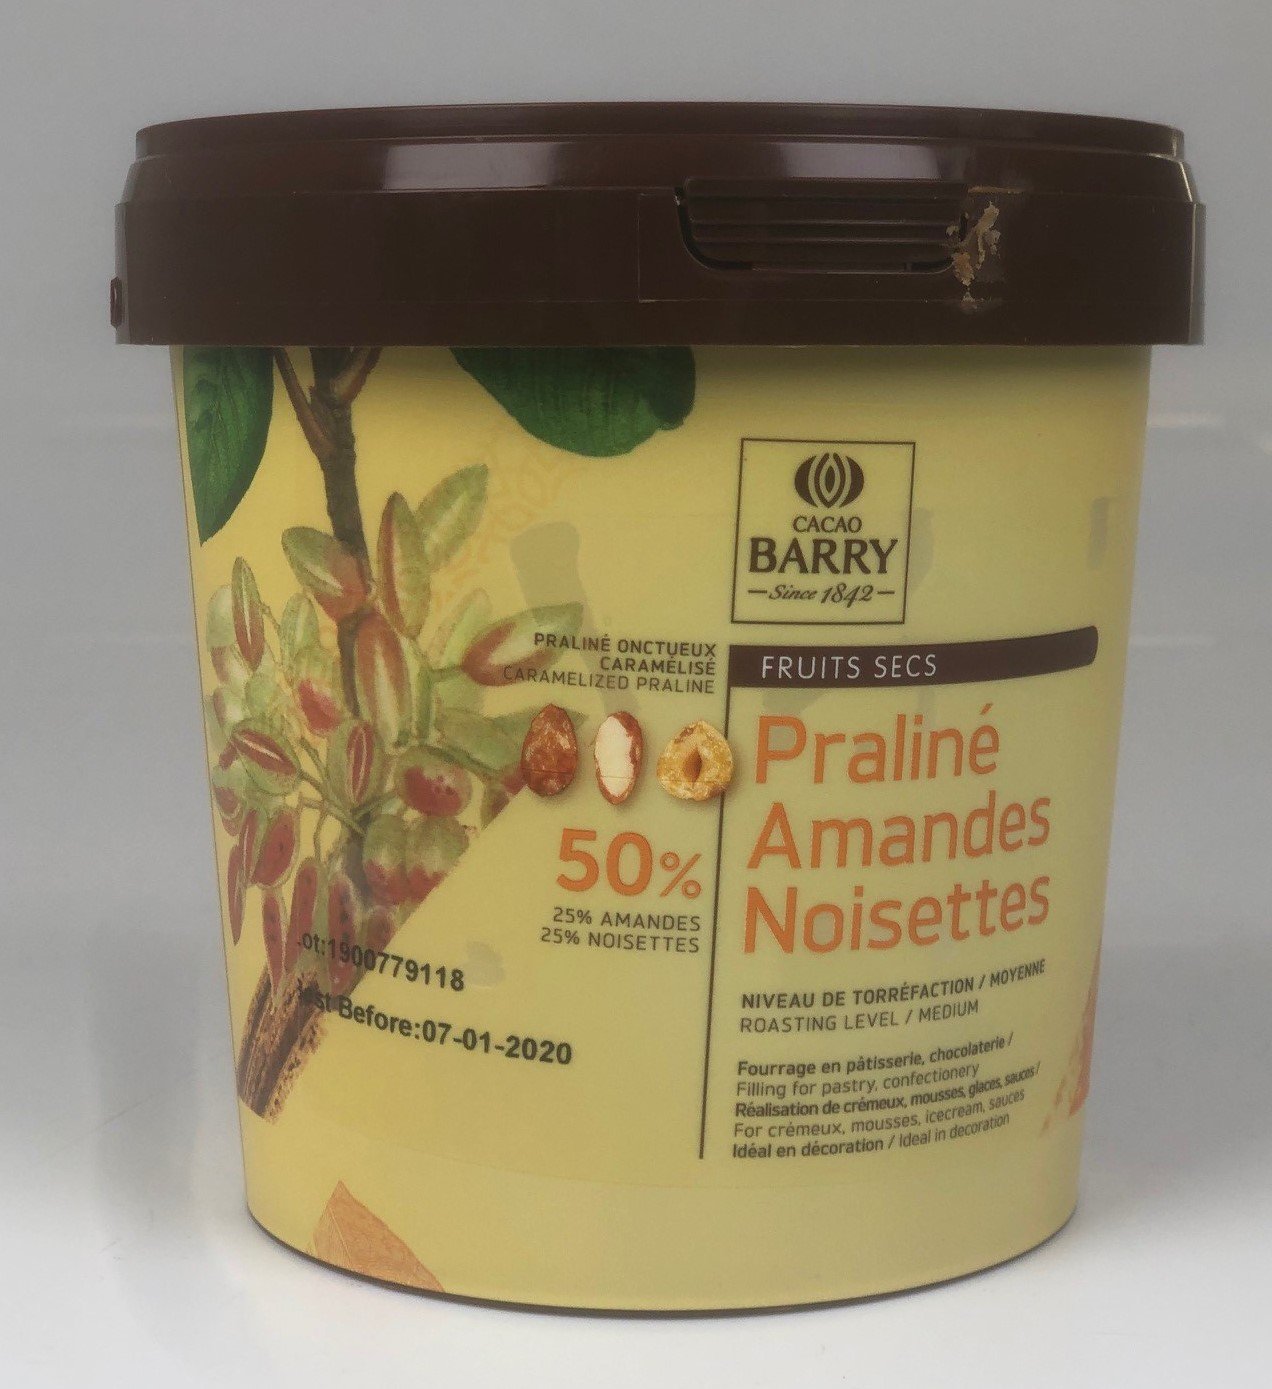 PRALINE AMANDES NOISETTES - Pralins - La Boutique du Pâtissier